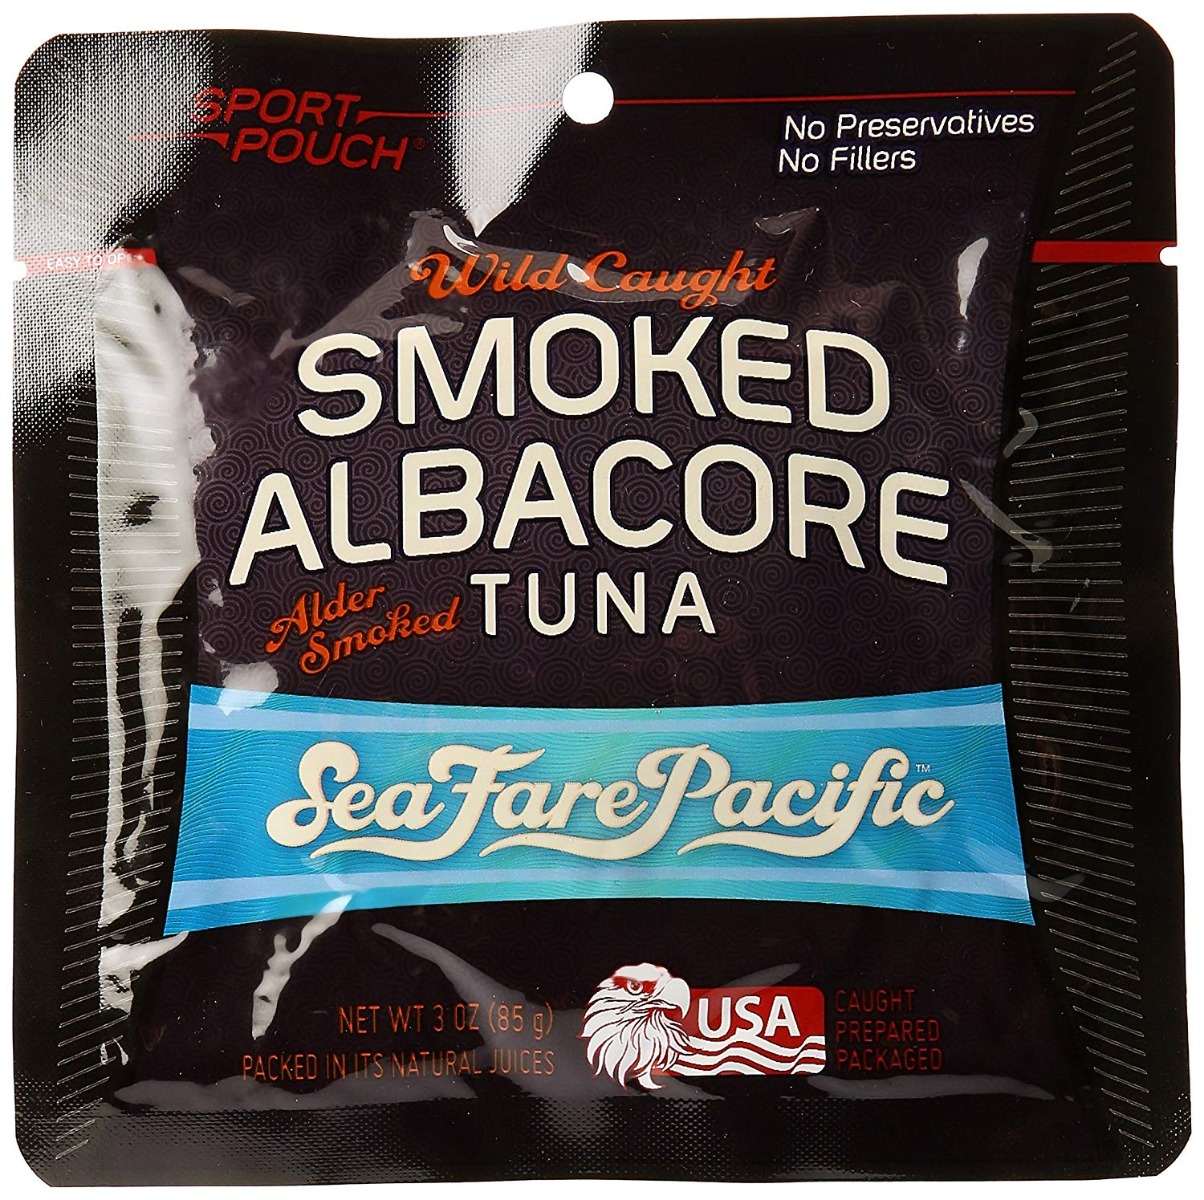 Sea Fare Pacific, Wild Caught Smoked Albacore Tuna - 854533003041